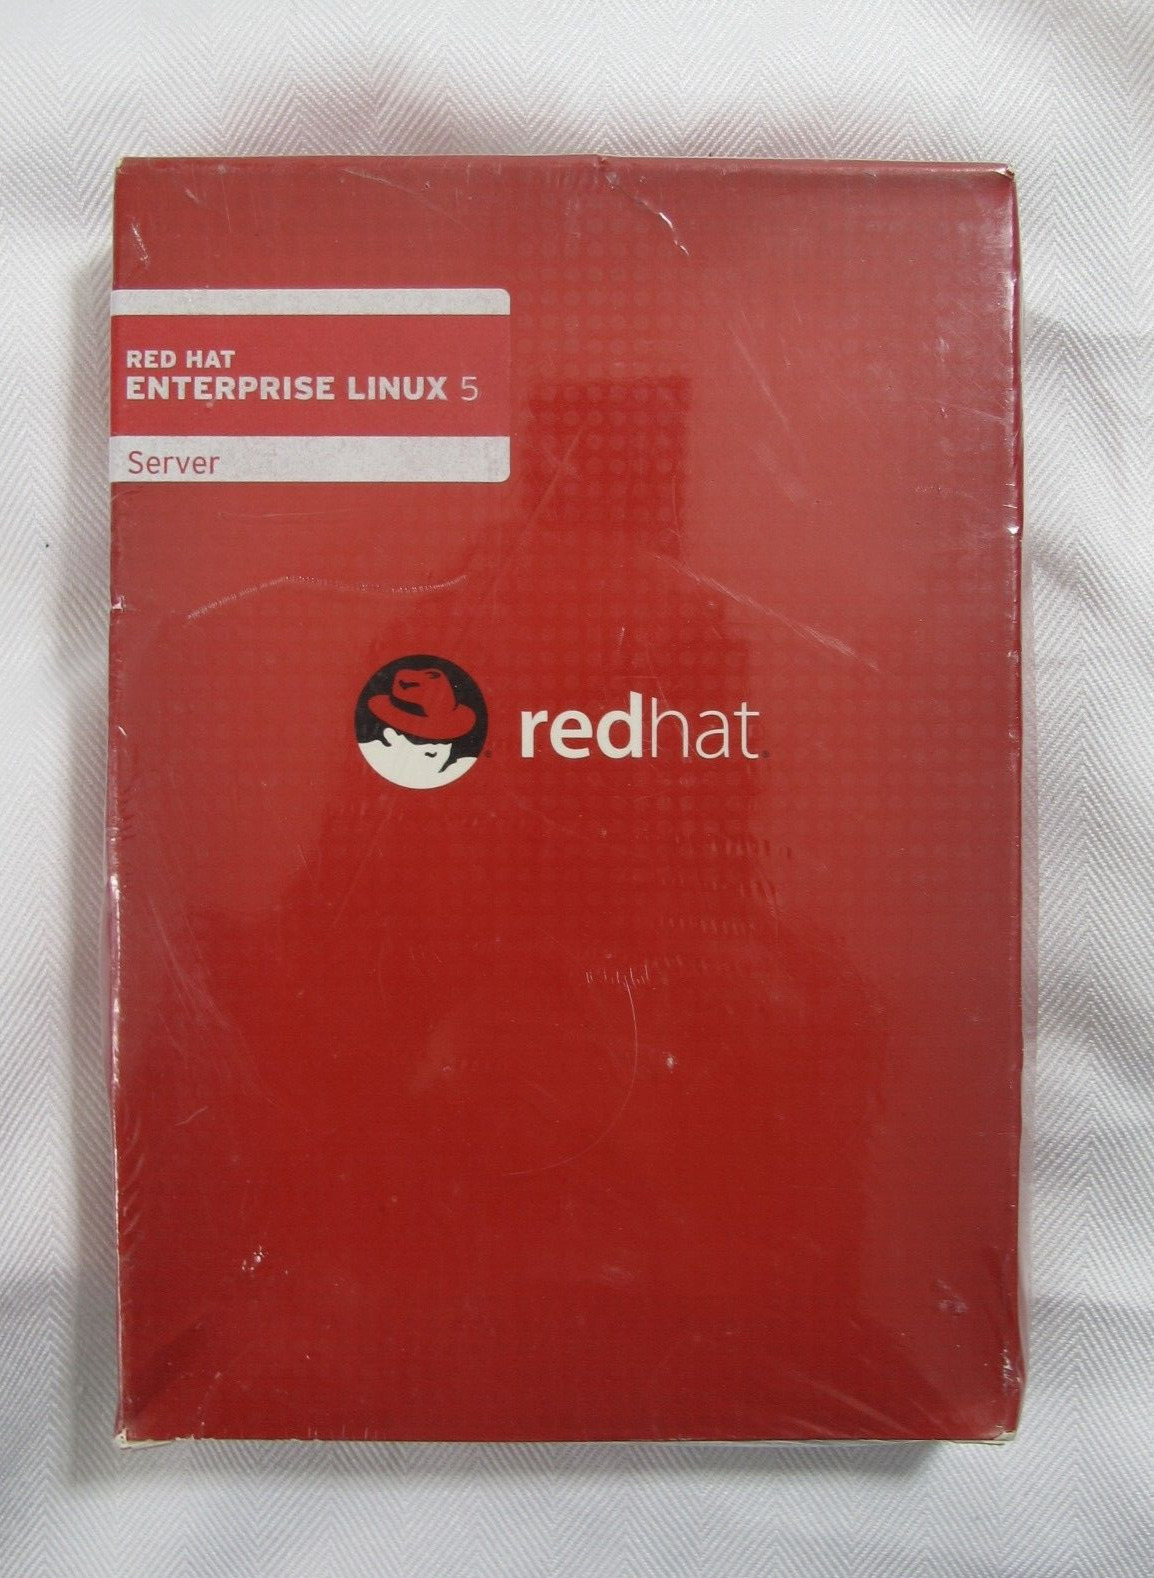 Red Hat Enterprise Linux 5 Server RHF032US-R1 NEW Sealed